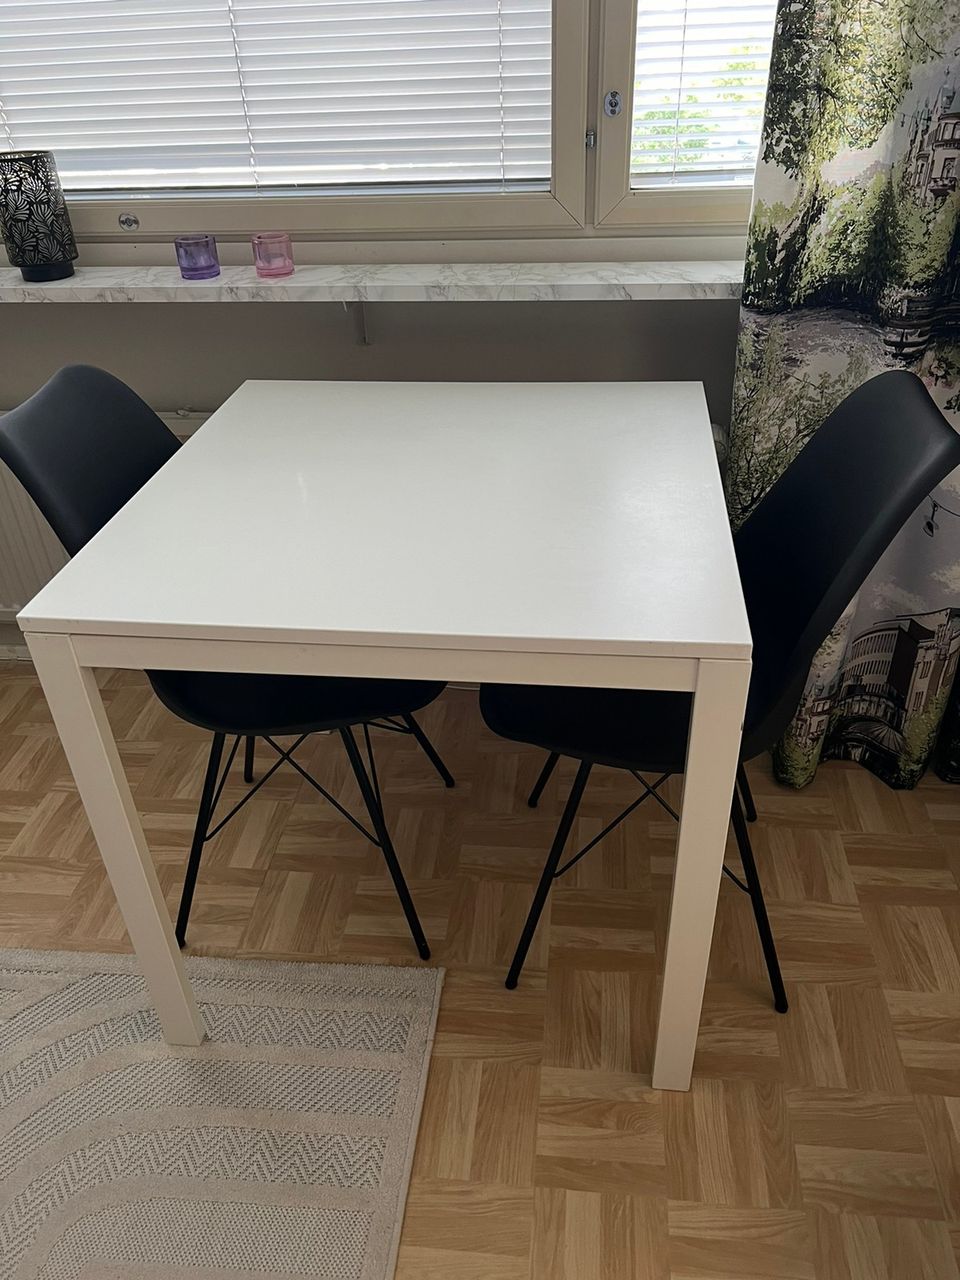 Ikean Melltorp ruokapöytä sekä kaksi Jyskin Klarup tuolia